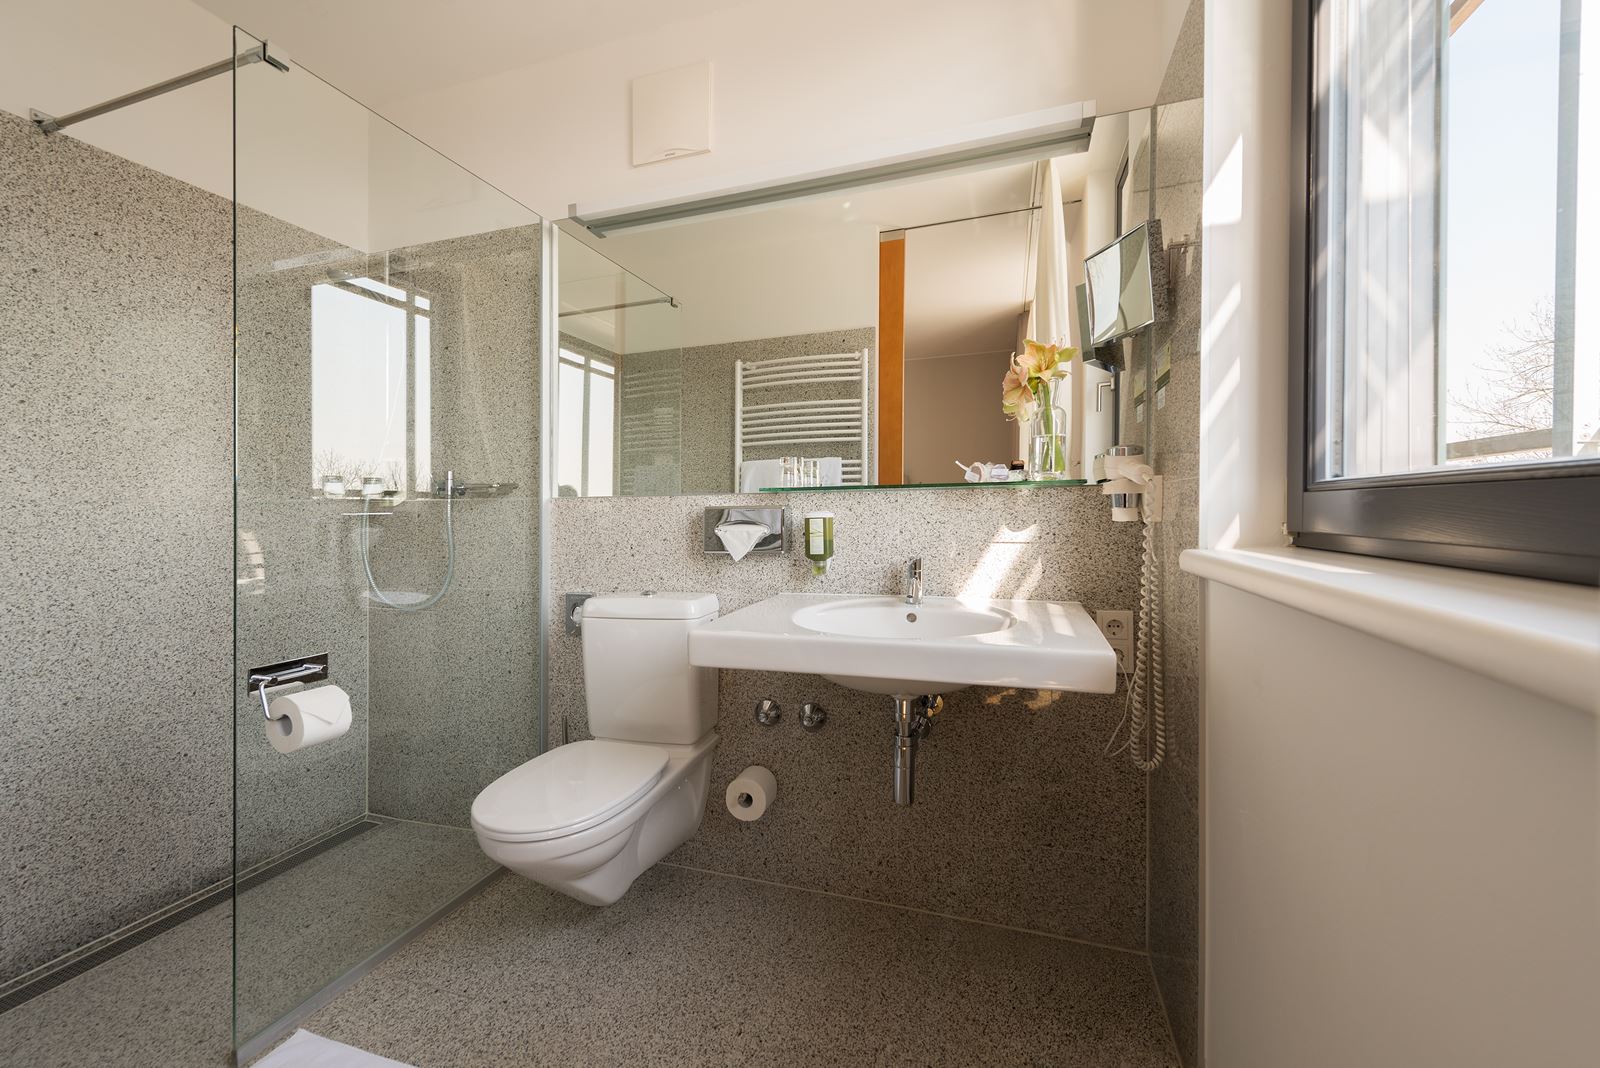 Badezimmer Smart Doppelzimmer mit Dusche, WC, Waschbecken, Föhn, Spiegelfront und Fenster